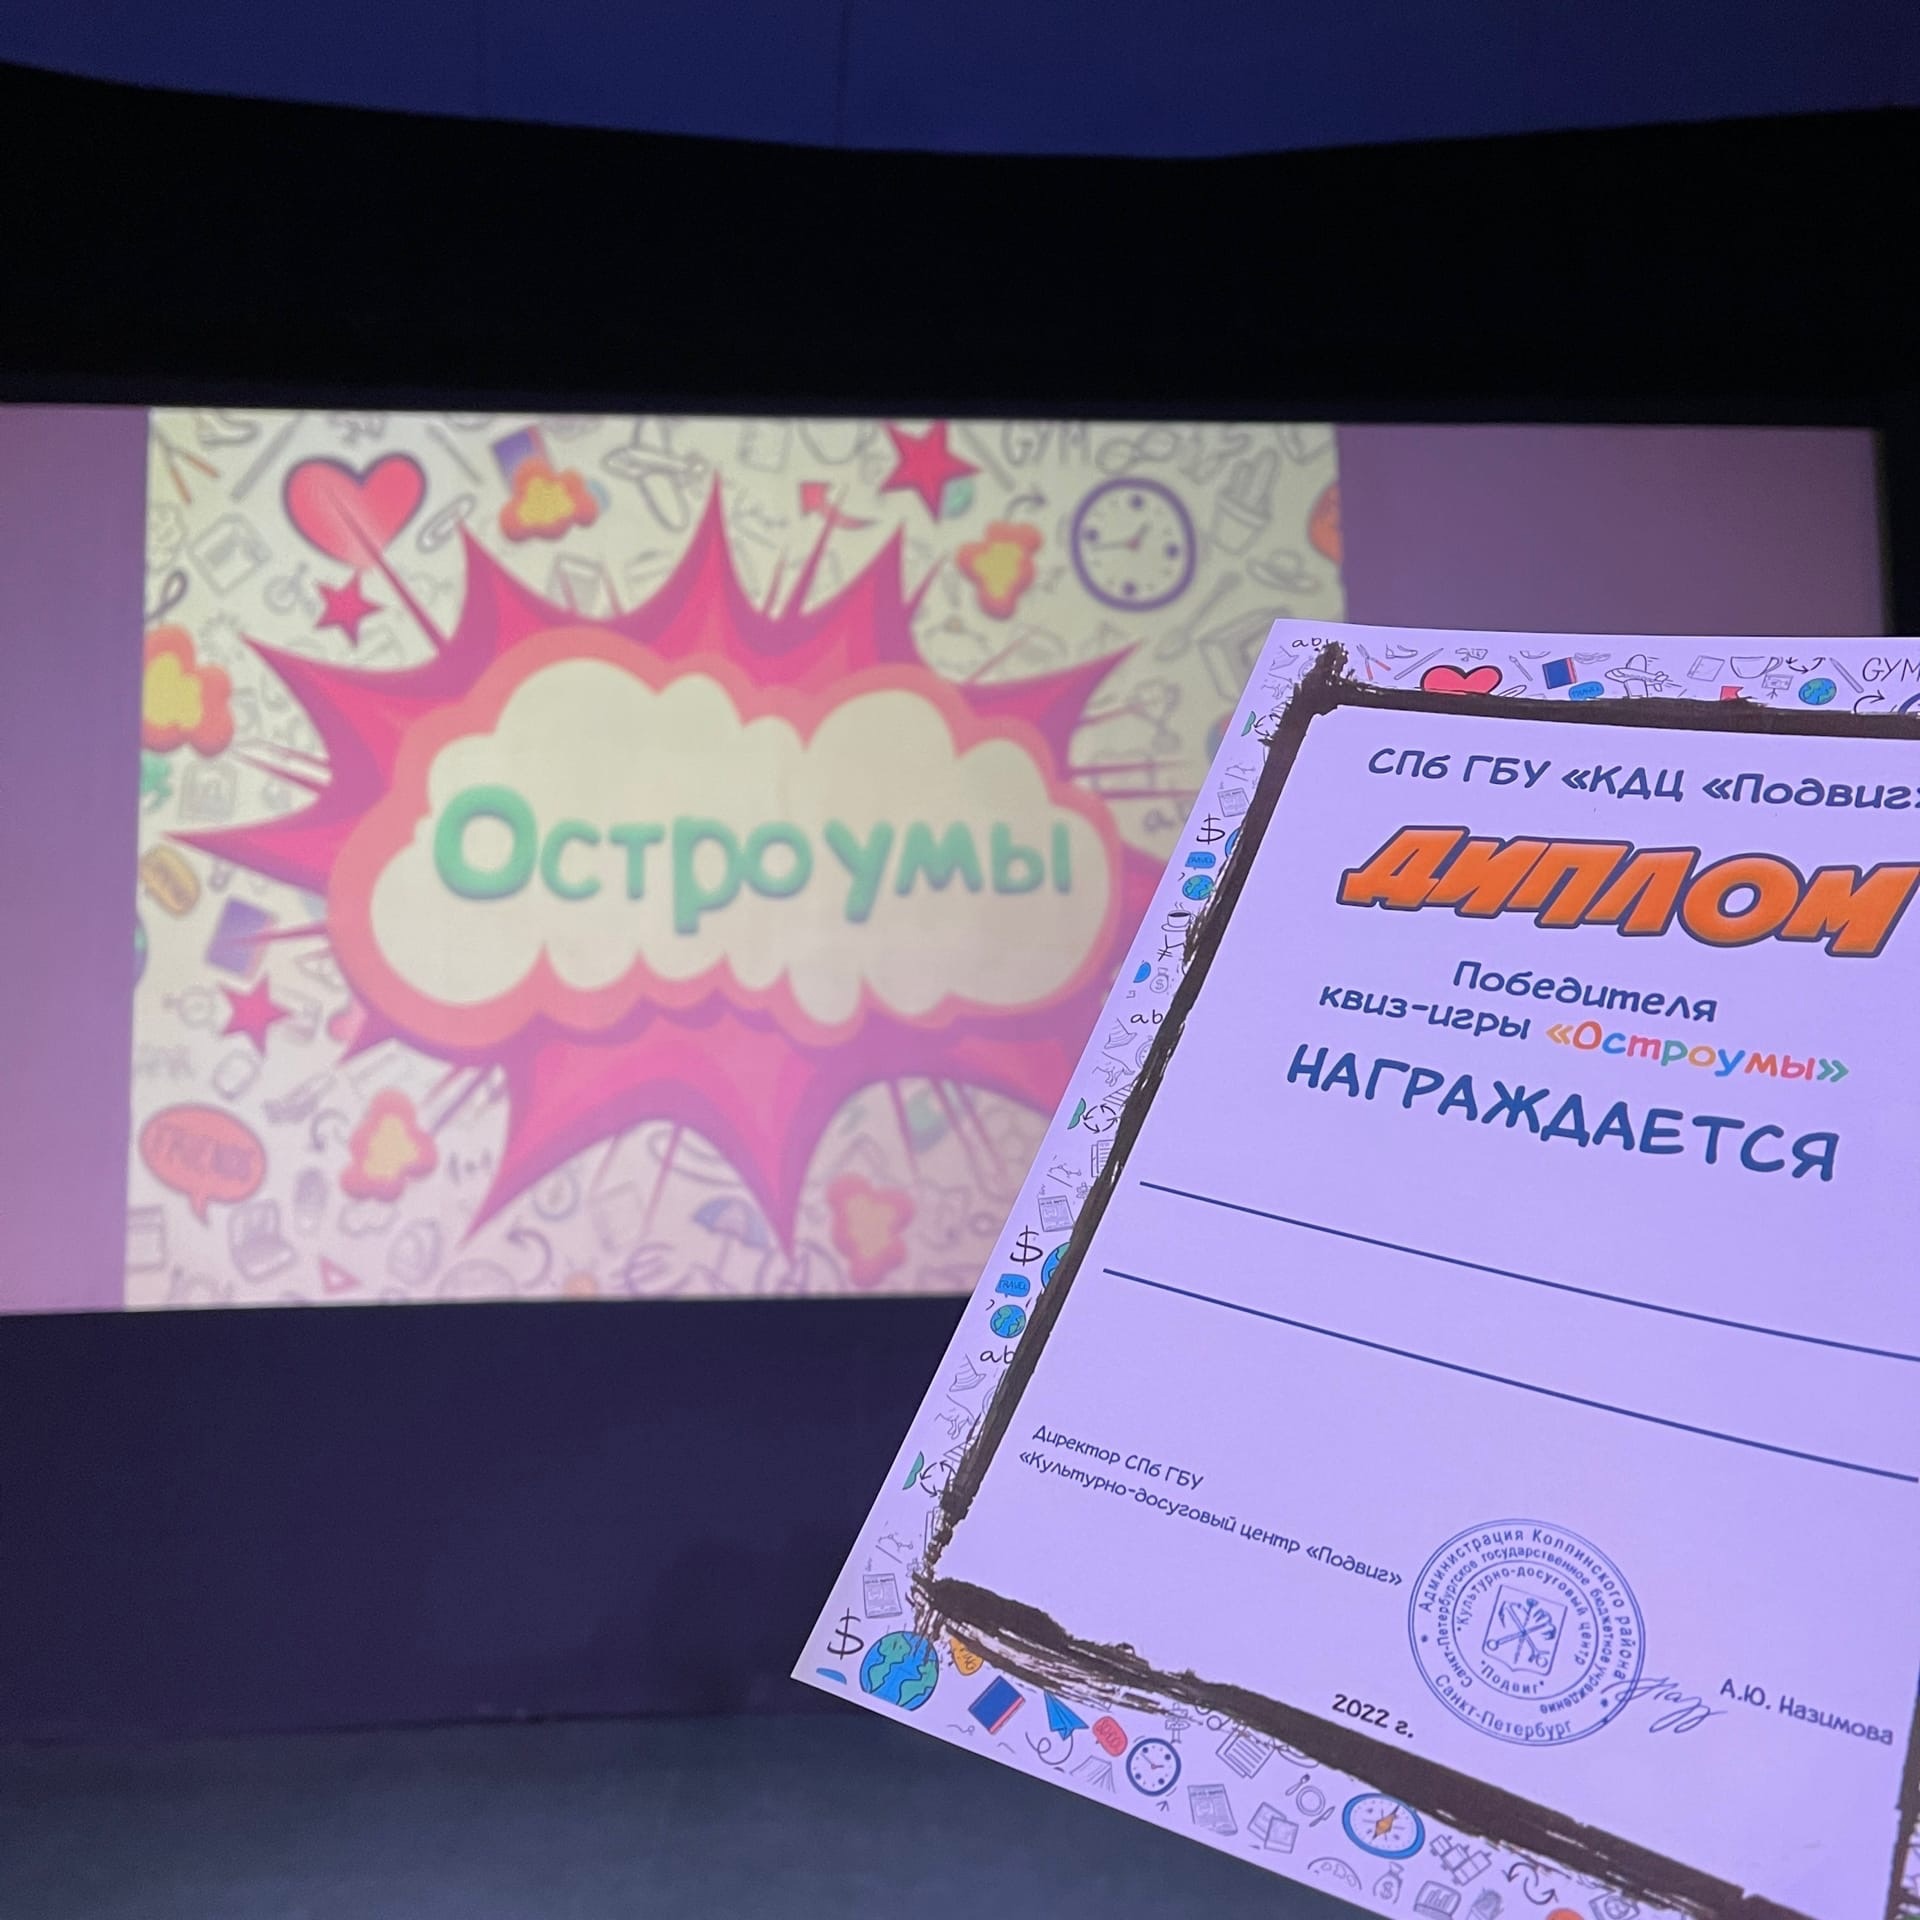 Сегодня в КДЦ "Подвиг" была проведена интеллектуальная игра-квиз "Остроумы".